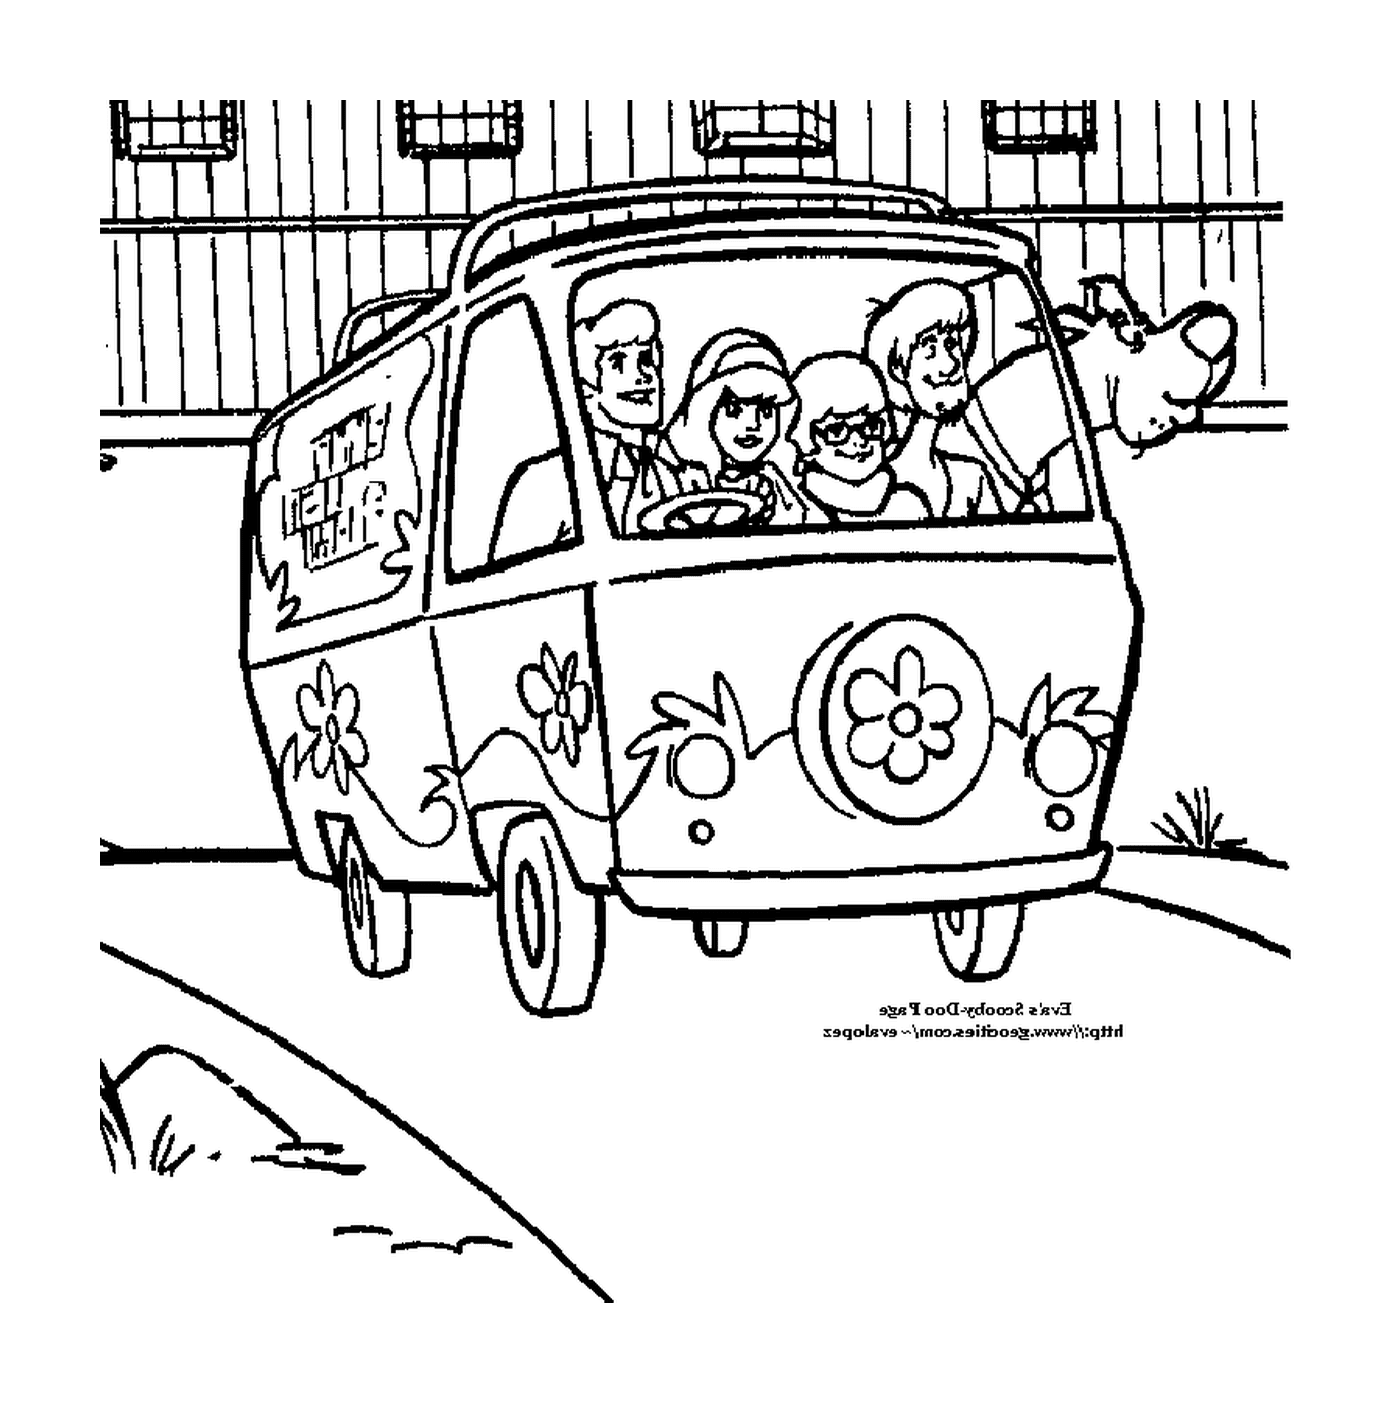  Una furgoneta con gente dentro 